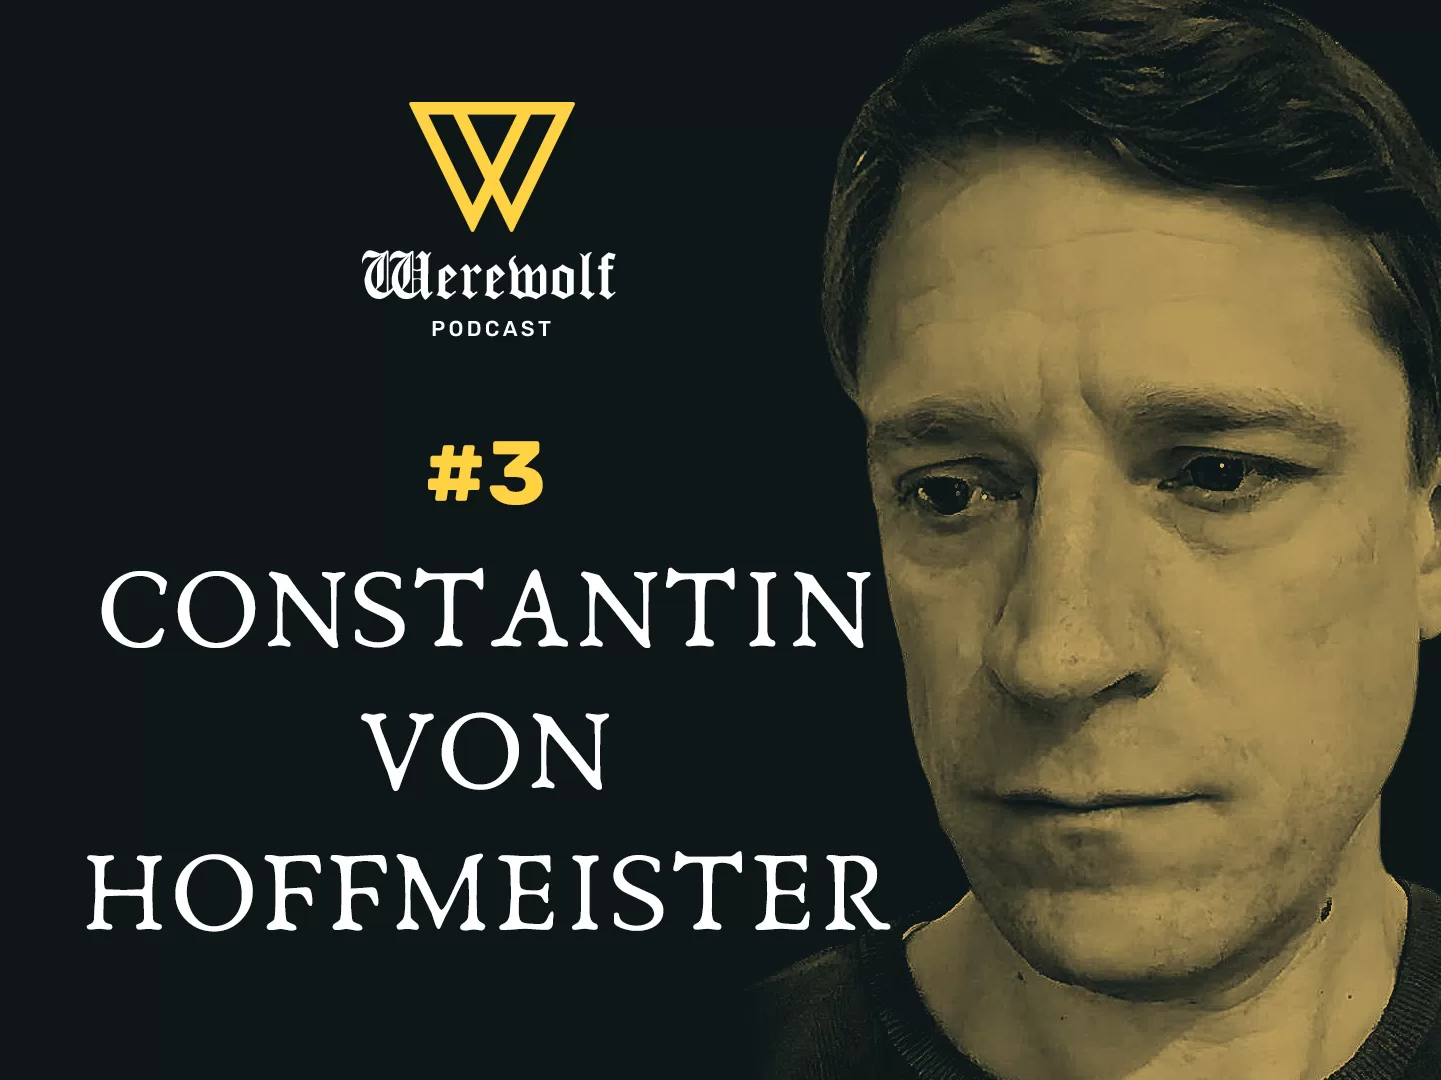 Werewolf Podcast #3: Constantin von Hoffmeister